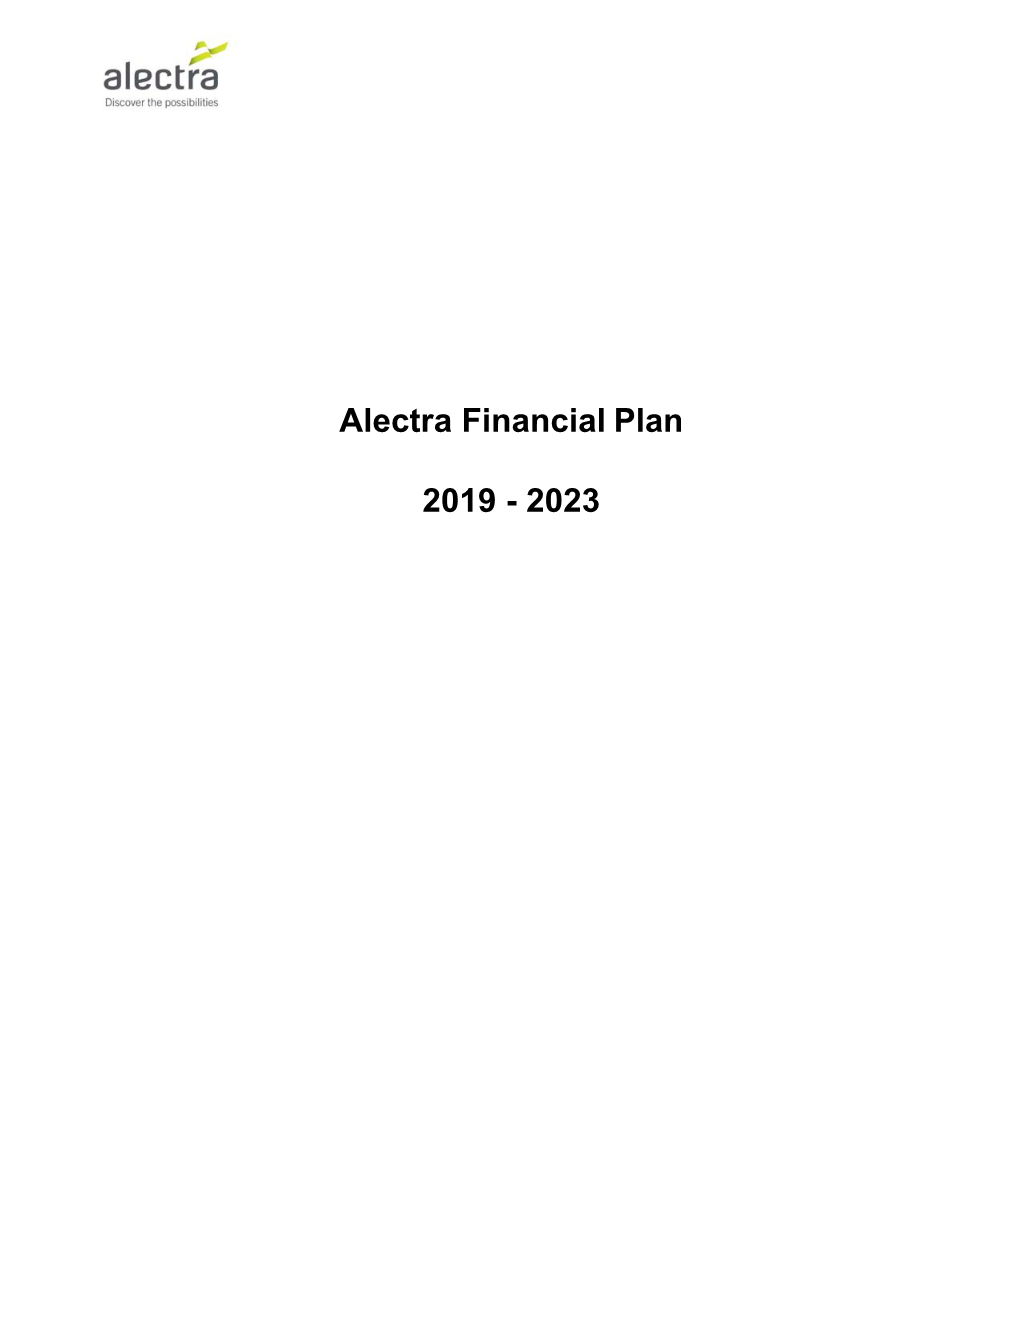 Alectra Financial Plan 2019